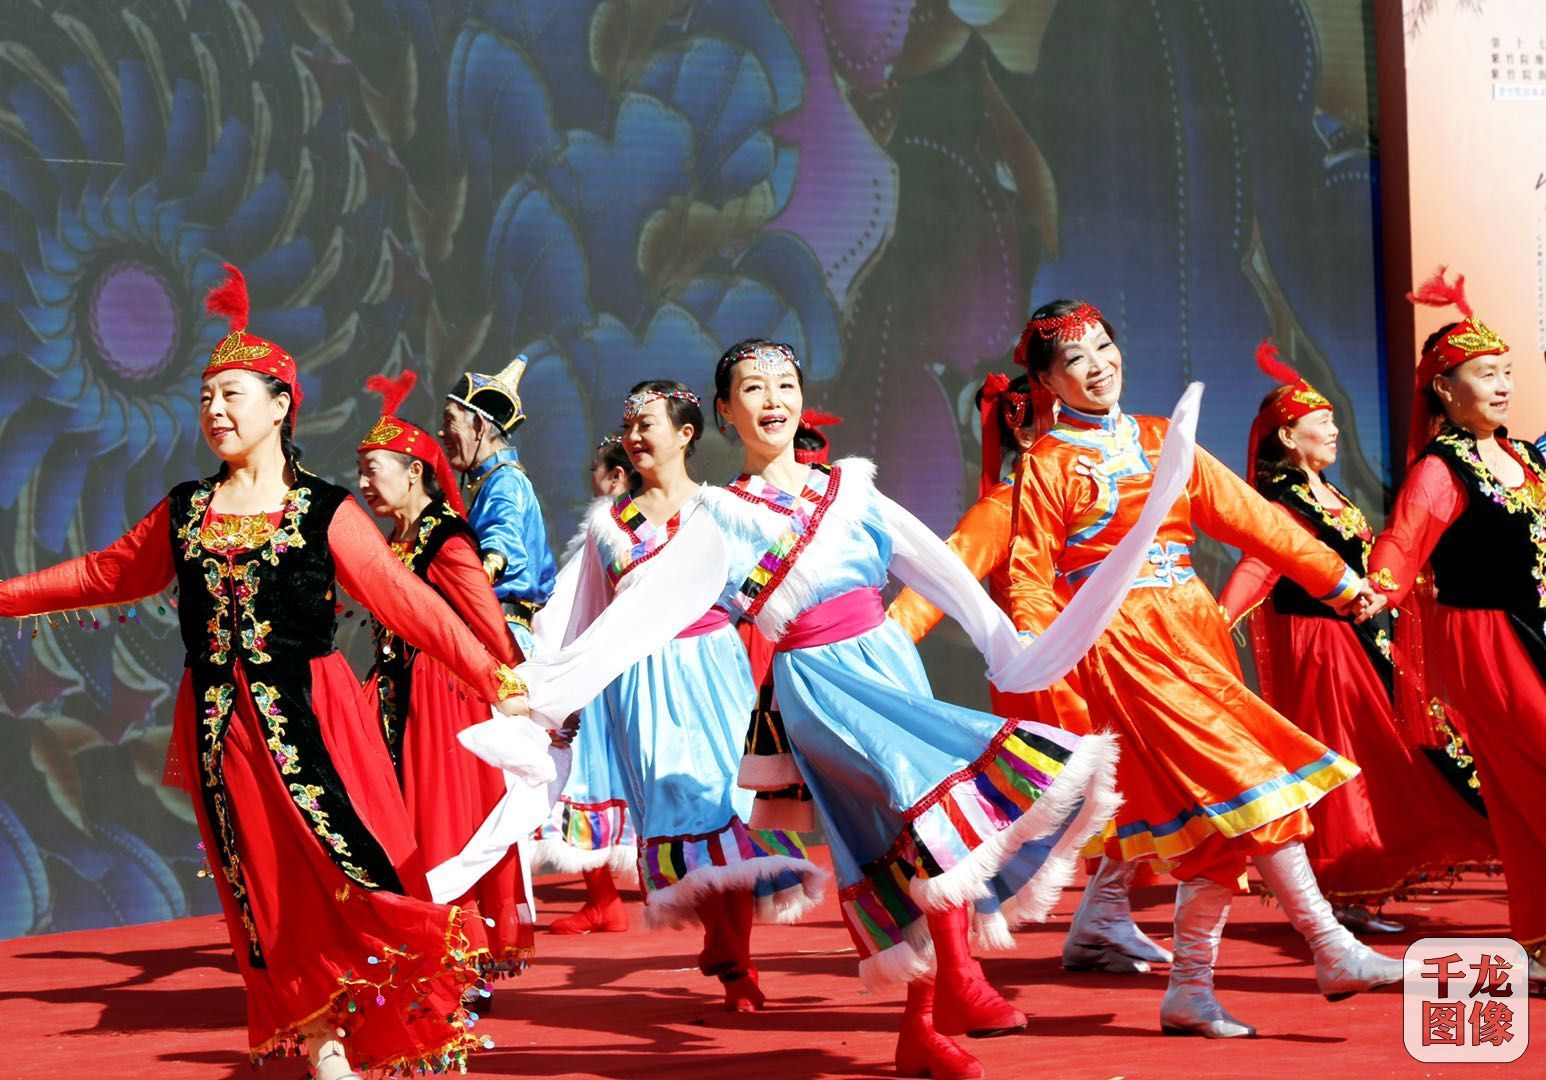 北京海淀紫竹院第17届民族文化节开幕 22个社区街坊邻里齐过节